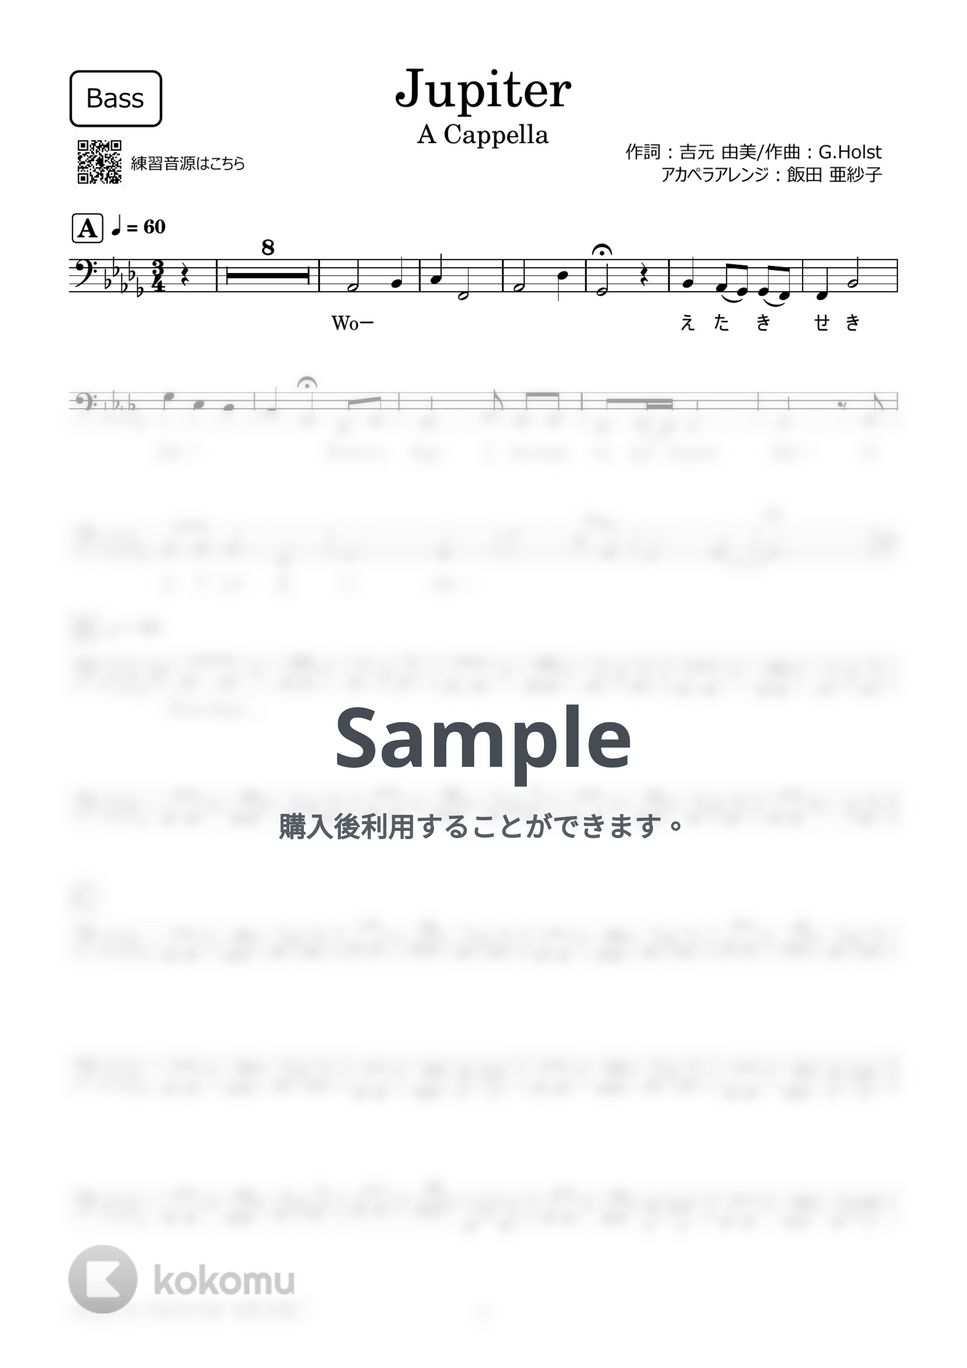 平原 綾香 - Jupiter (アカペラ楽譜♪Bassパート譜) by 飯田 亜紗子